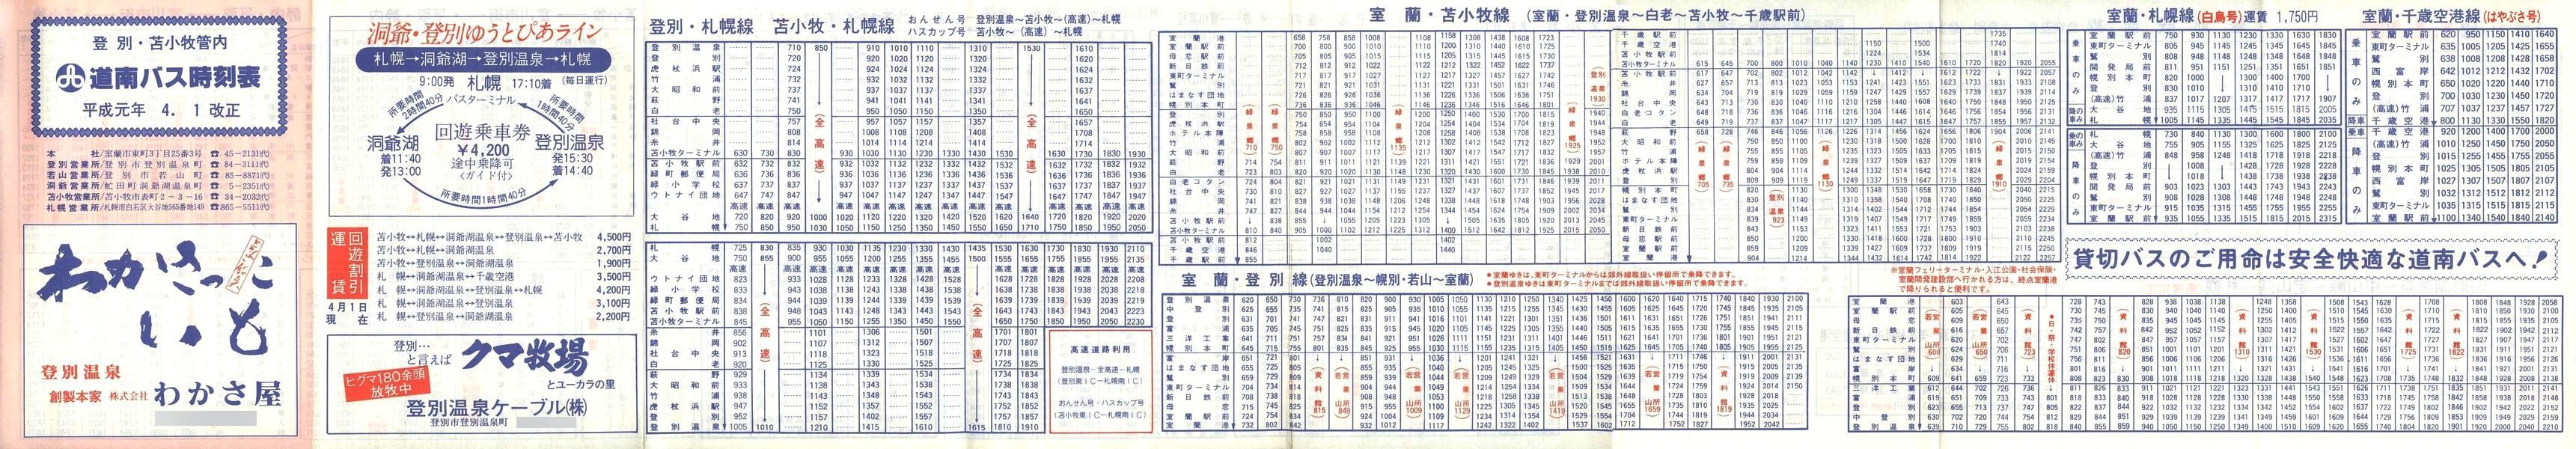 1989-04-01改正_道南バス_登別・苫小牧管内時刻表表面